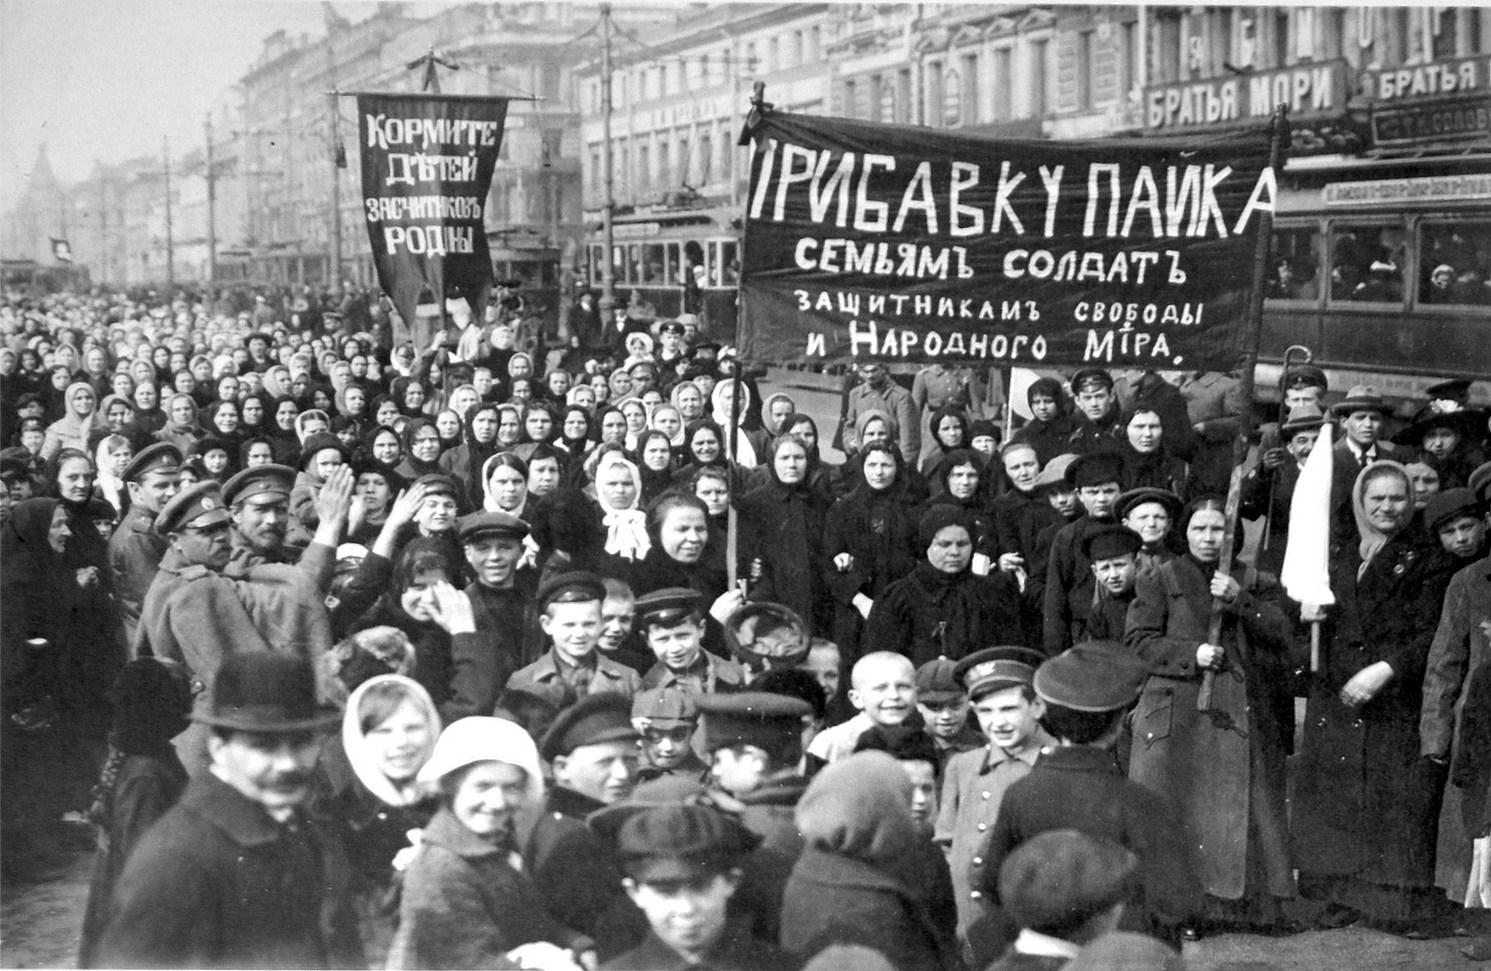 النساء والجنود قدن ثورة فبراير 1917 فى روسيا